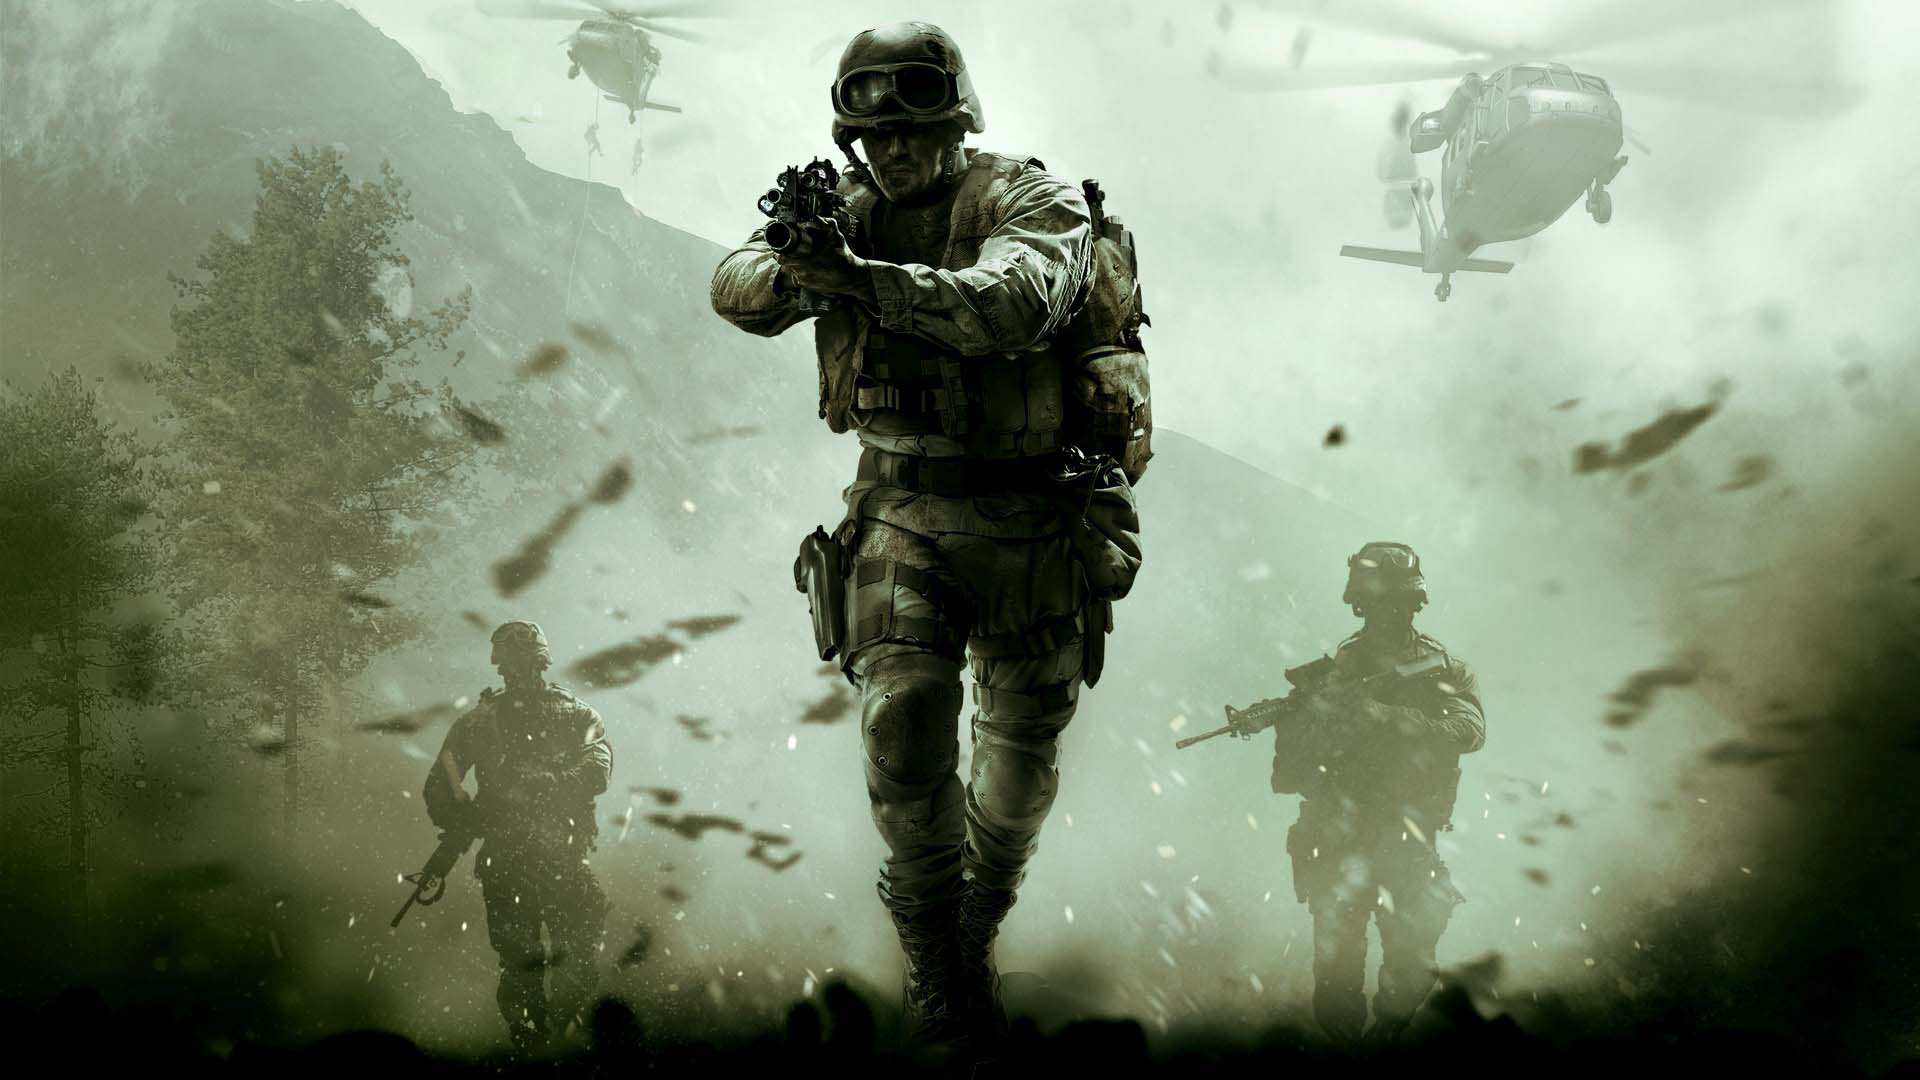 Teaser confirma novo título de Call of Duty, Cold War